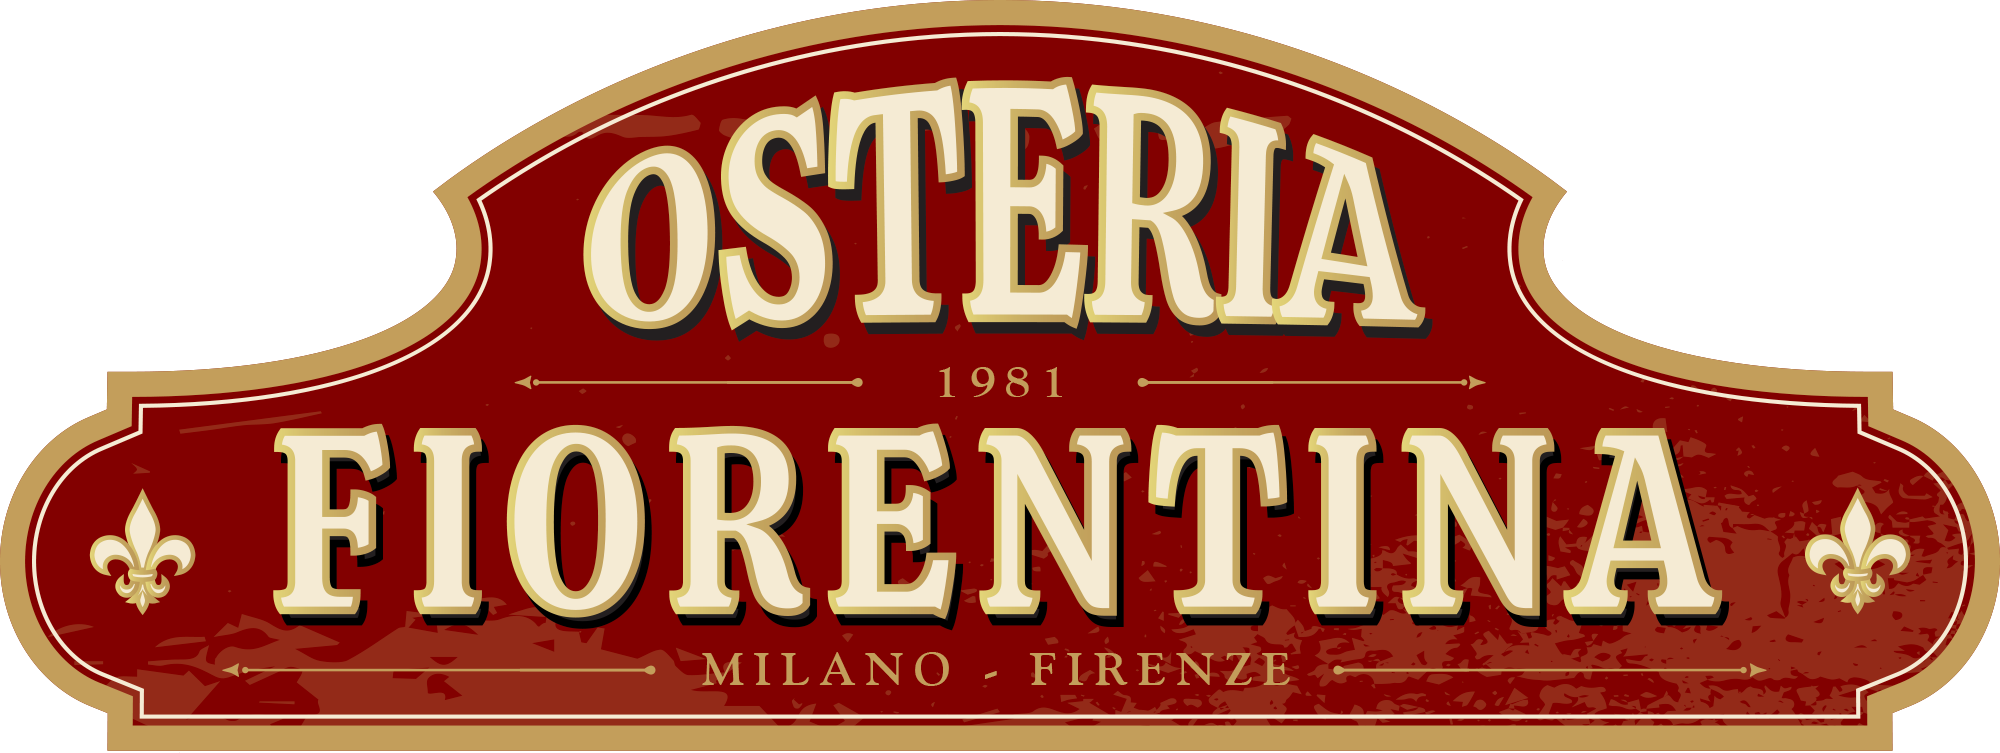 Osteria Fiorentina